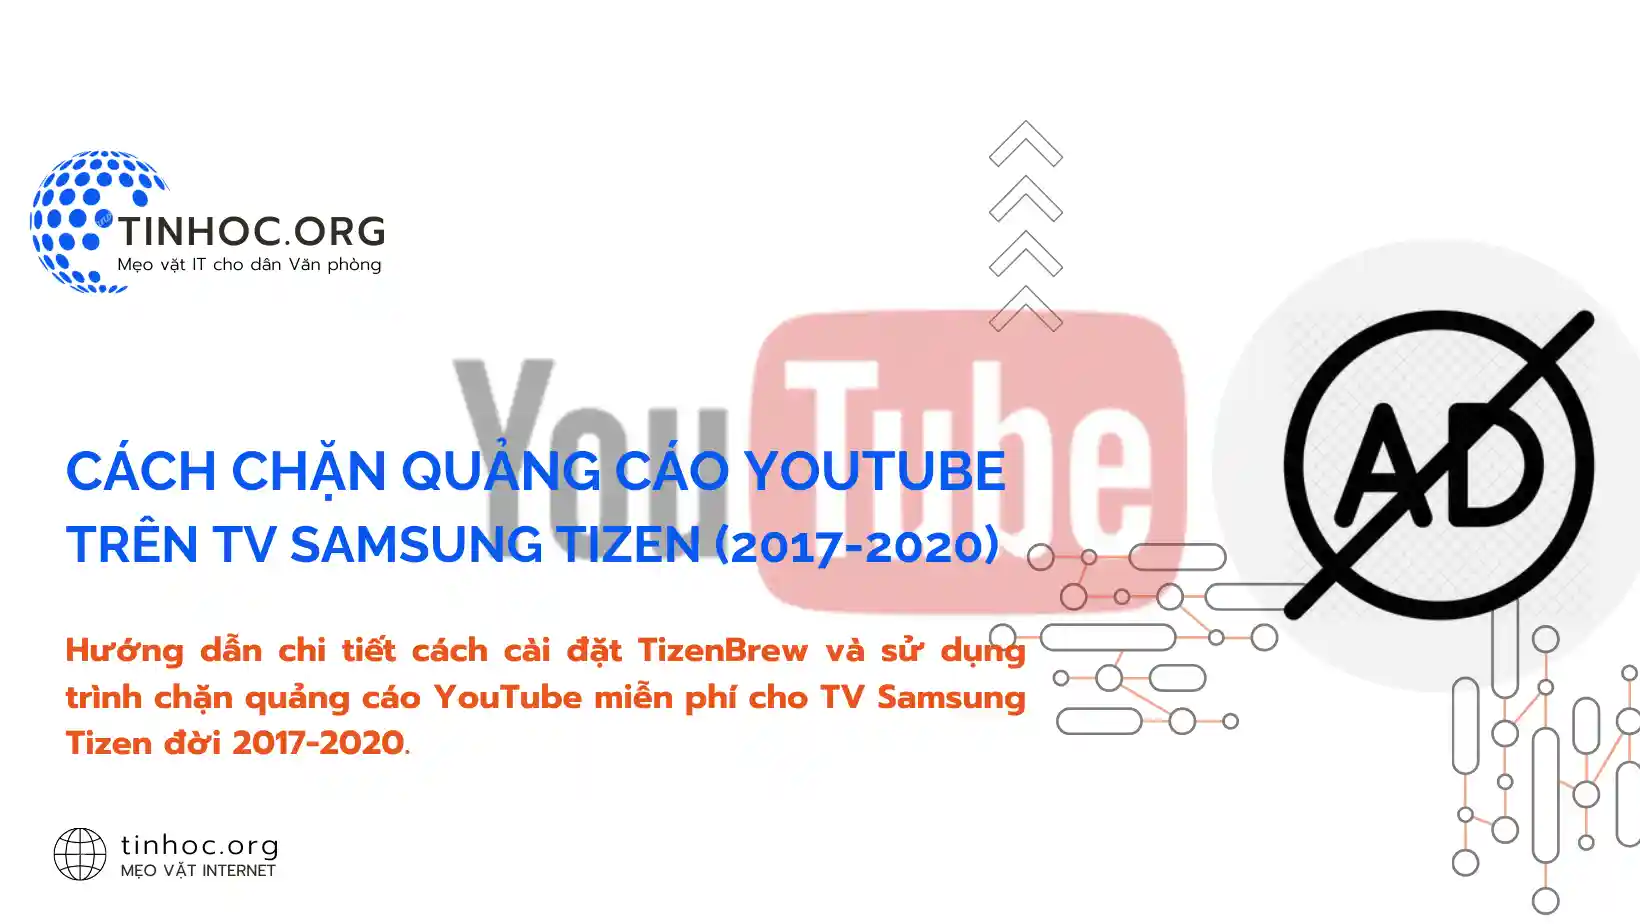 Hướng dẫn chi tiết cách cài đặt TizenBrew và sử dụng trình chặn quảng cáo YouTube miễn phí cho TV Samsung Tizen đời 2017-2020.